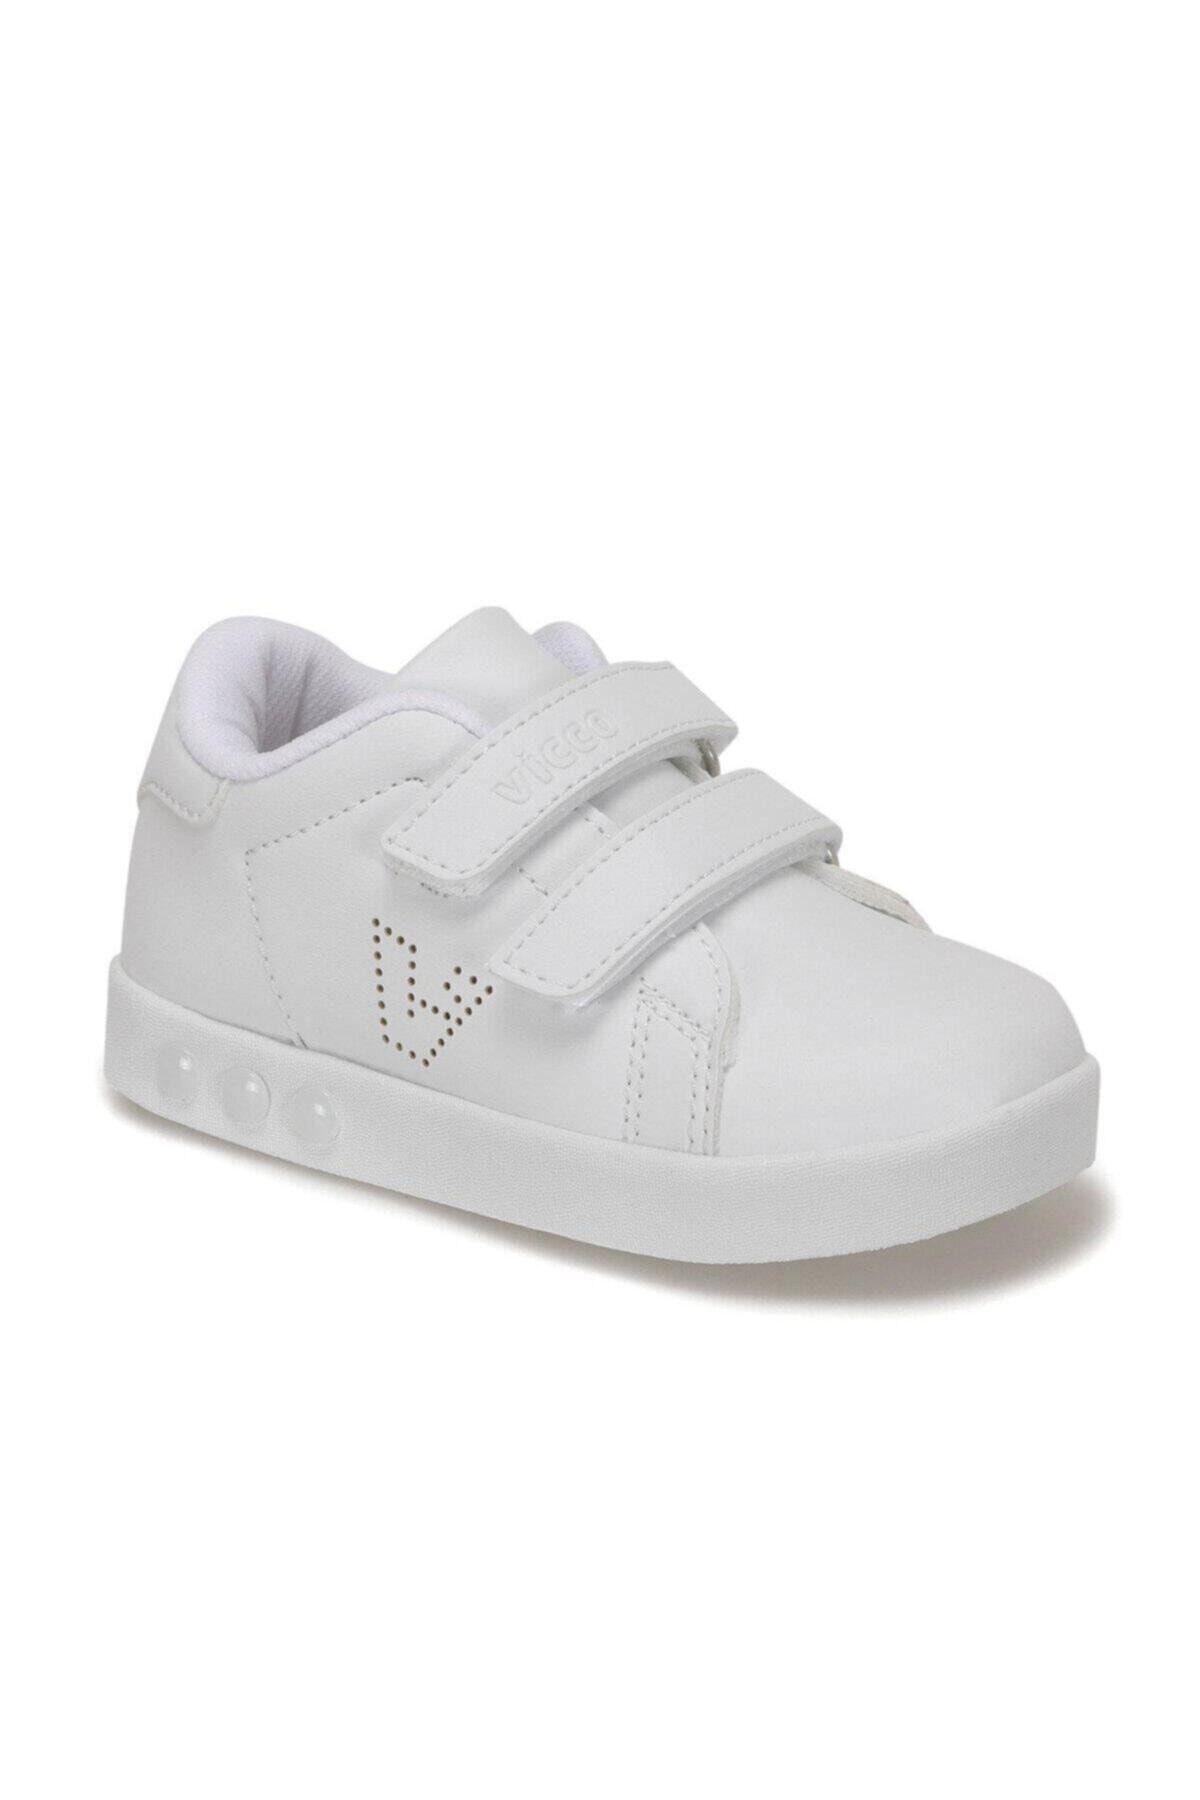 Vicco 313.E19K.100 Beyaz Kız Çocuk Yürüyüş Ayakkabısı 100578868